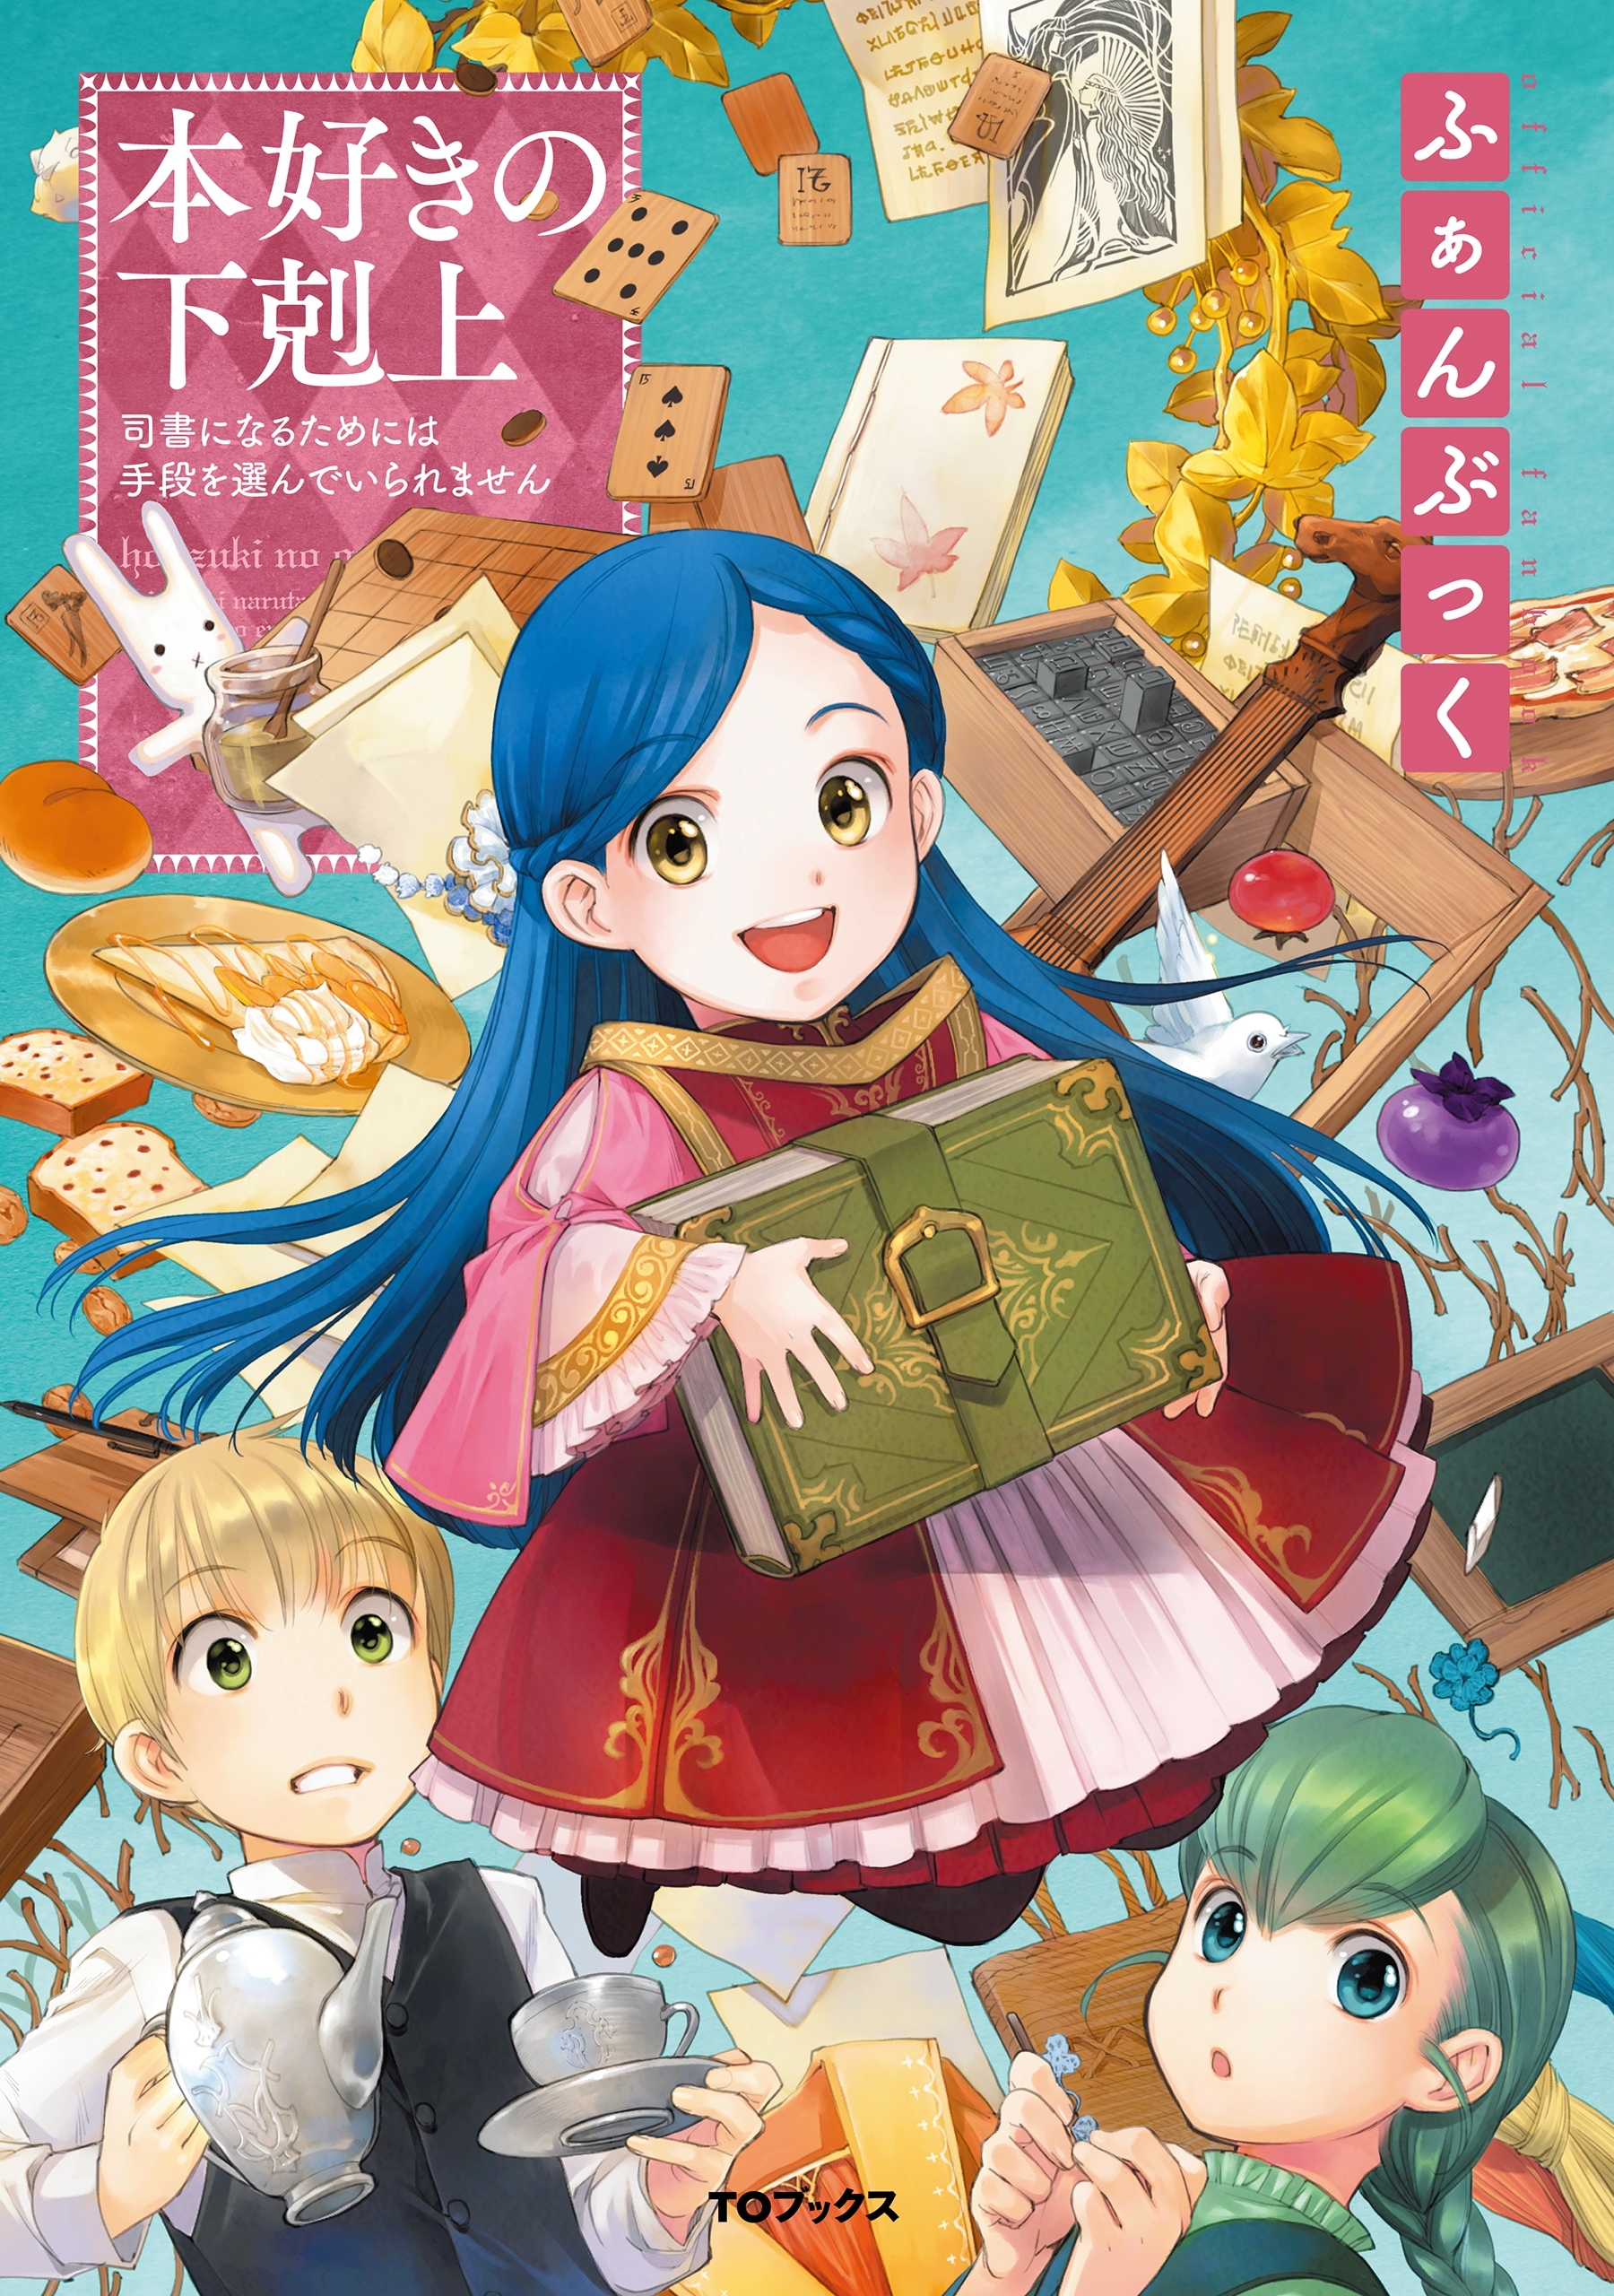 本好きの下剋上～司書になるためには手段を選んでいられません～第一部 VI「本がないなら作ればいい！」 (Honzuki no Gekokujou)  Manga Vol 6 by Suzuka